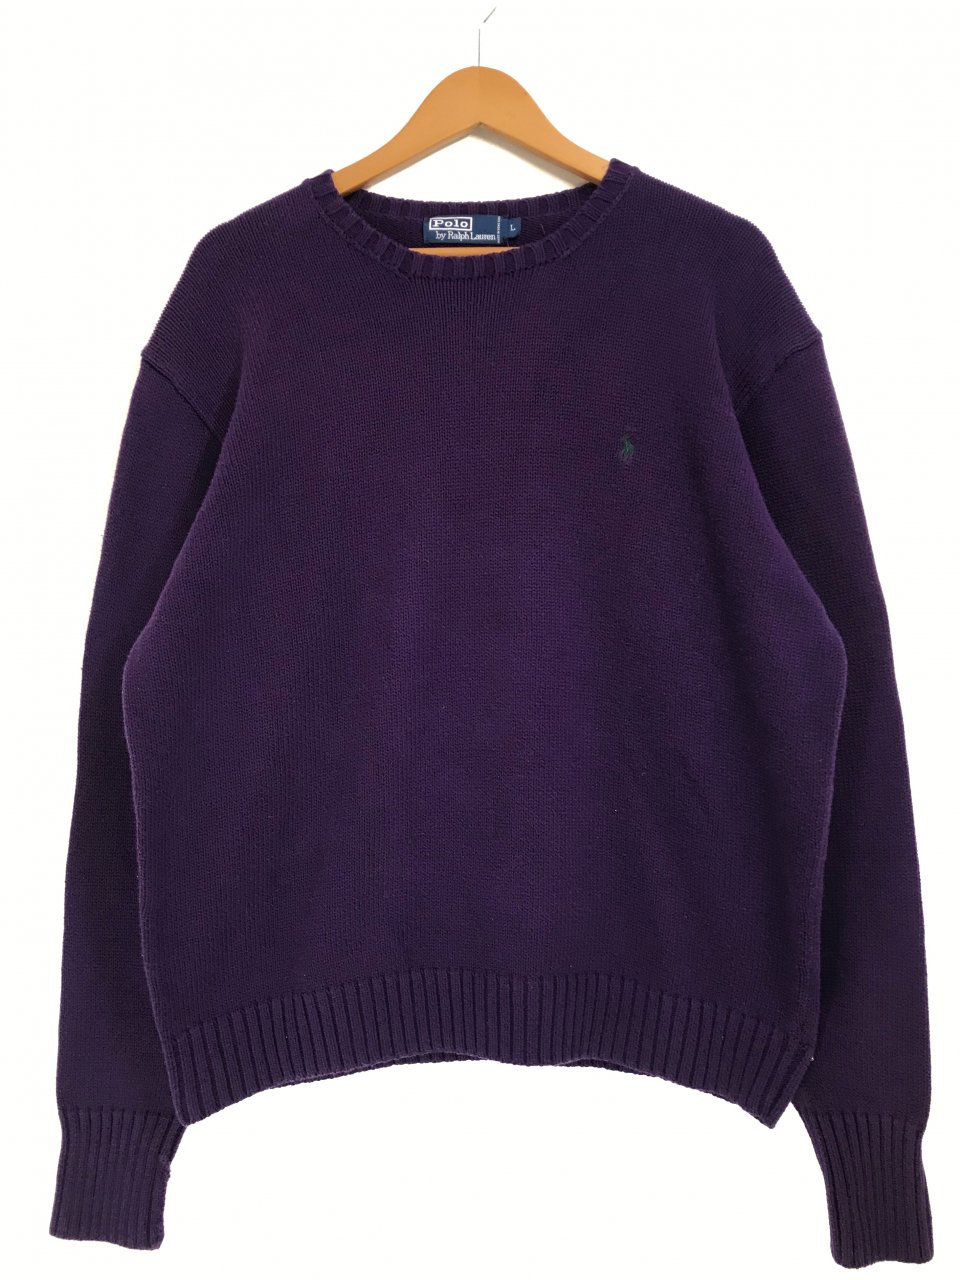 Polo Ralph Lauren Crew-Neck Cotton Knit 紫 L ポロラルフローレン